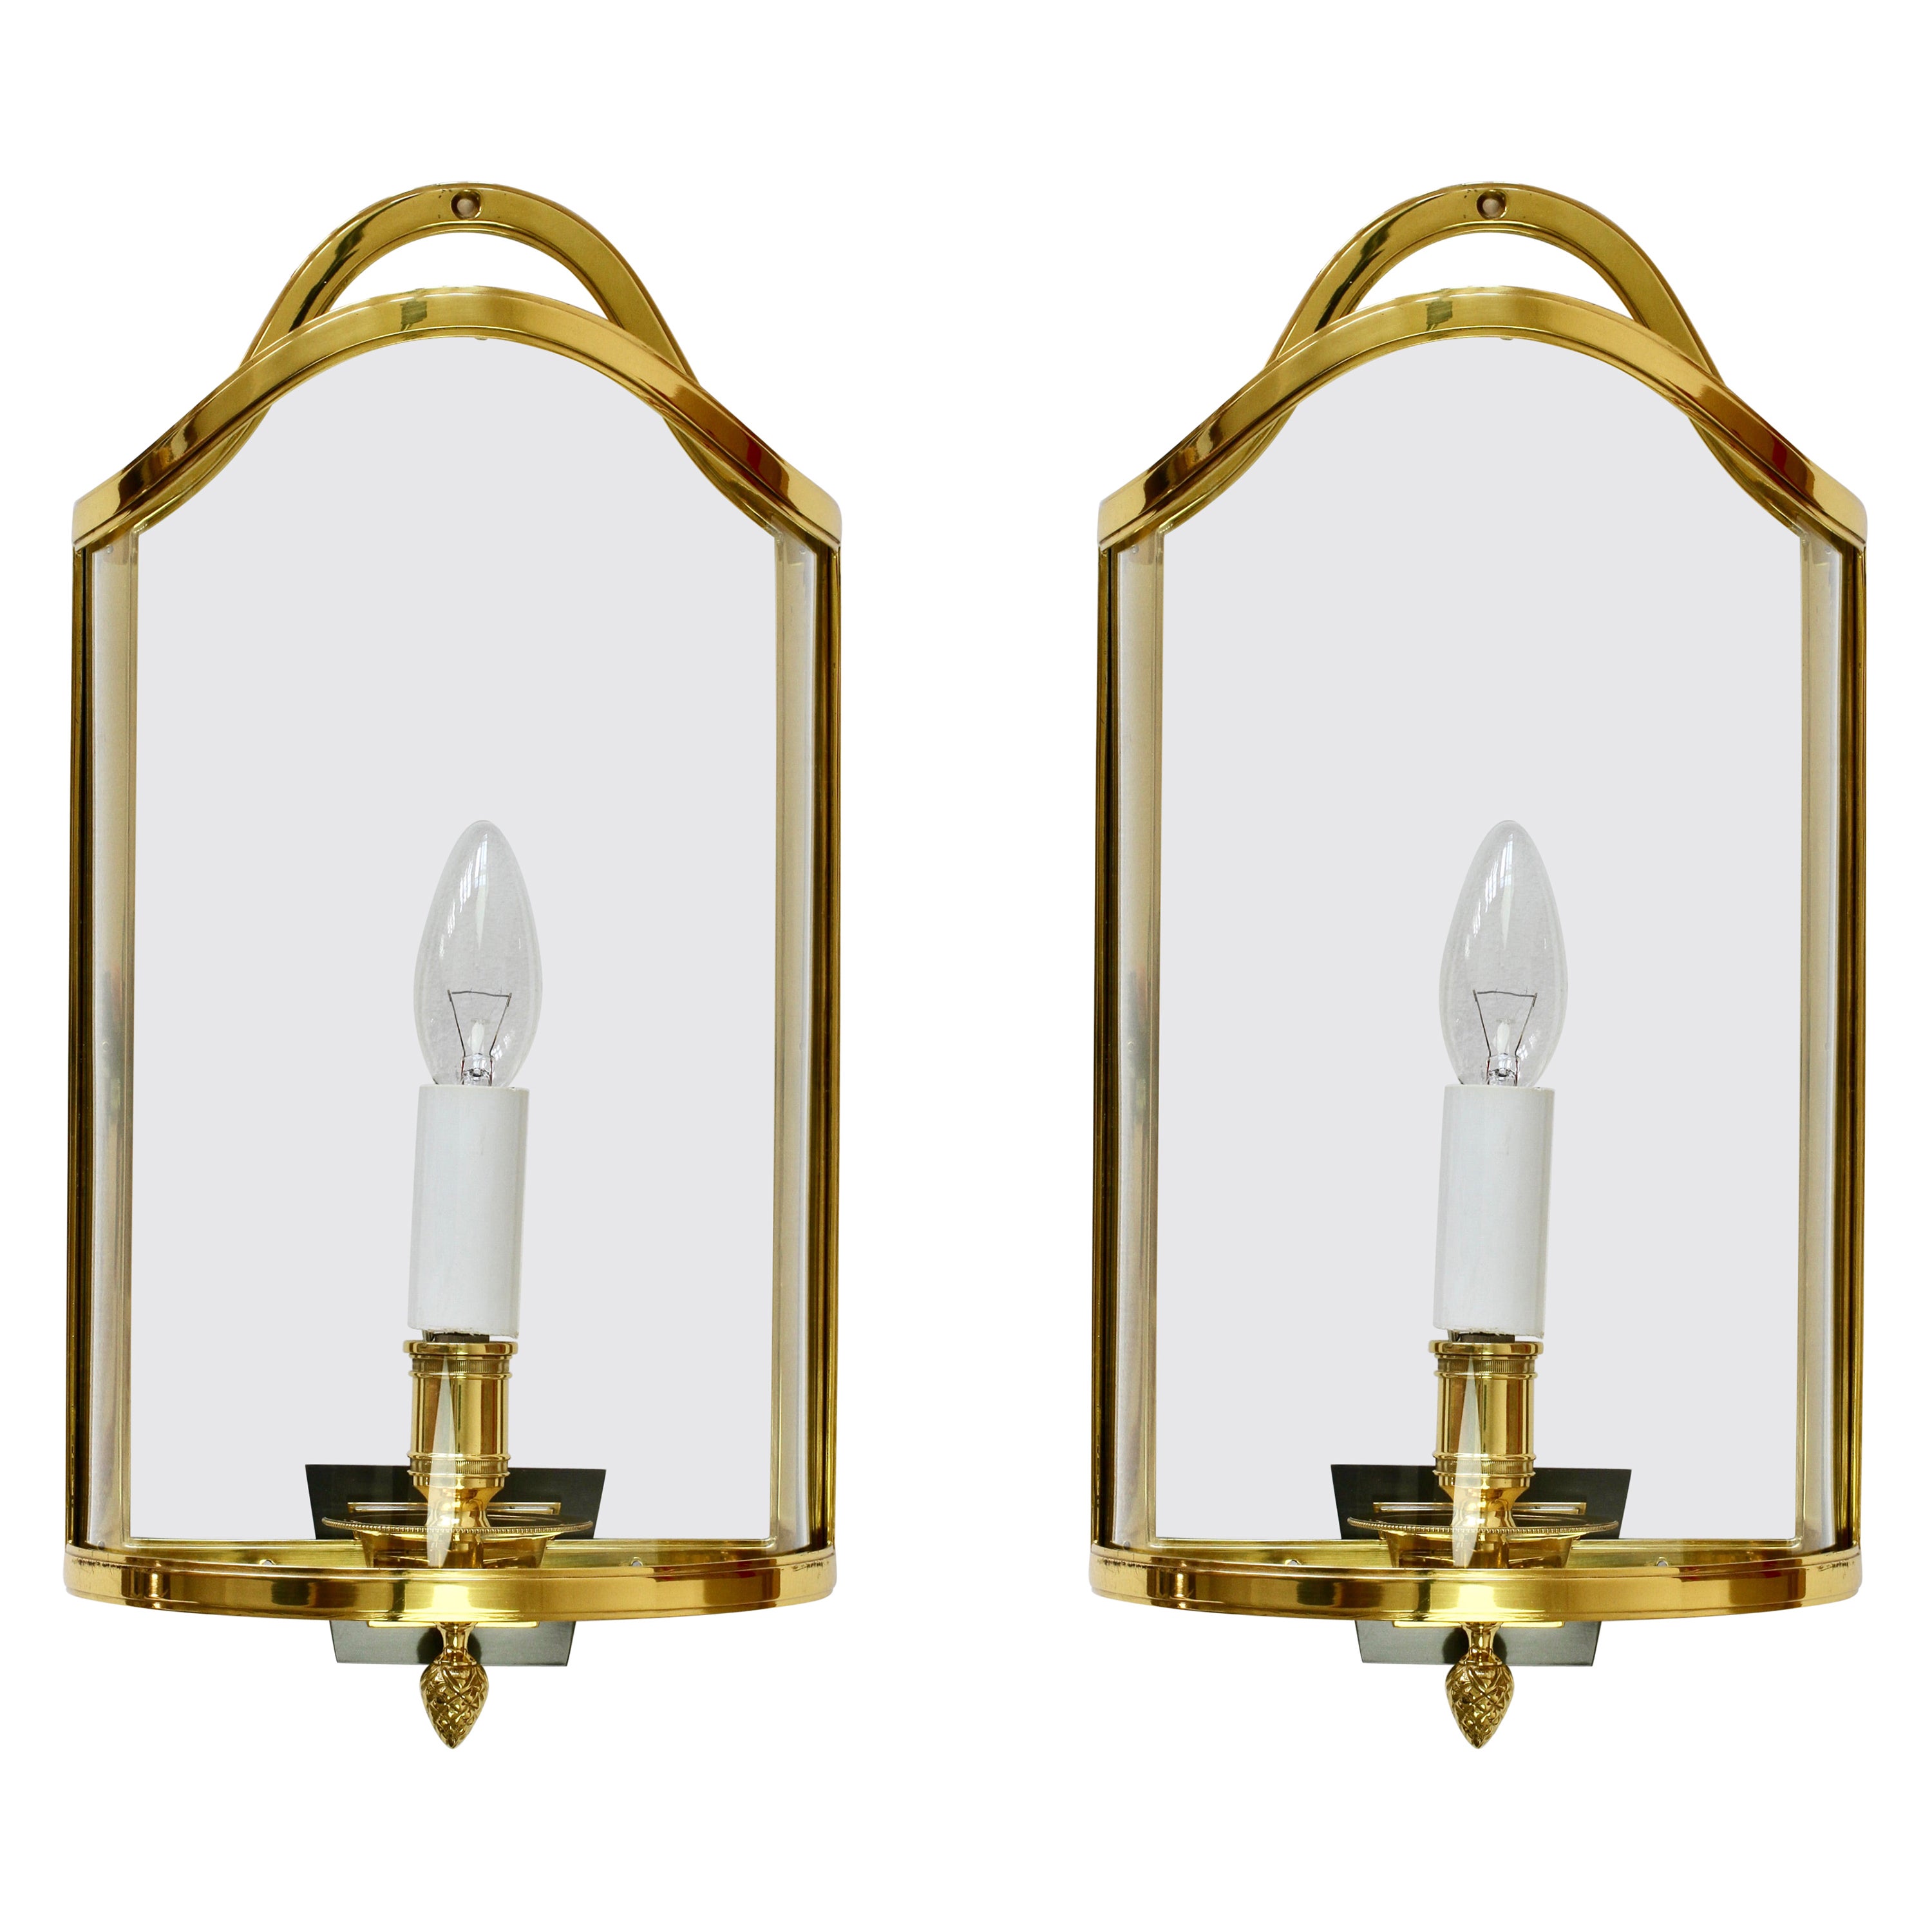 Pair of Maison Jansen Style Polished Brass Sconces by Vereinigte Werkstätten For Sale